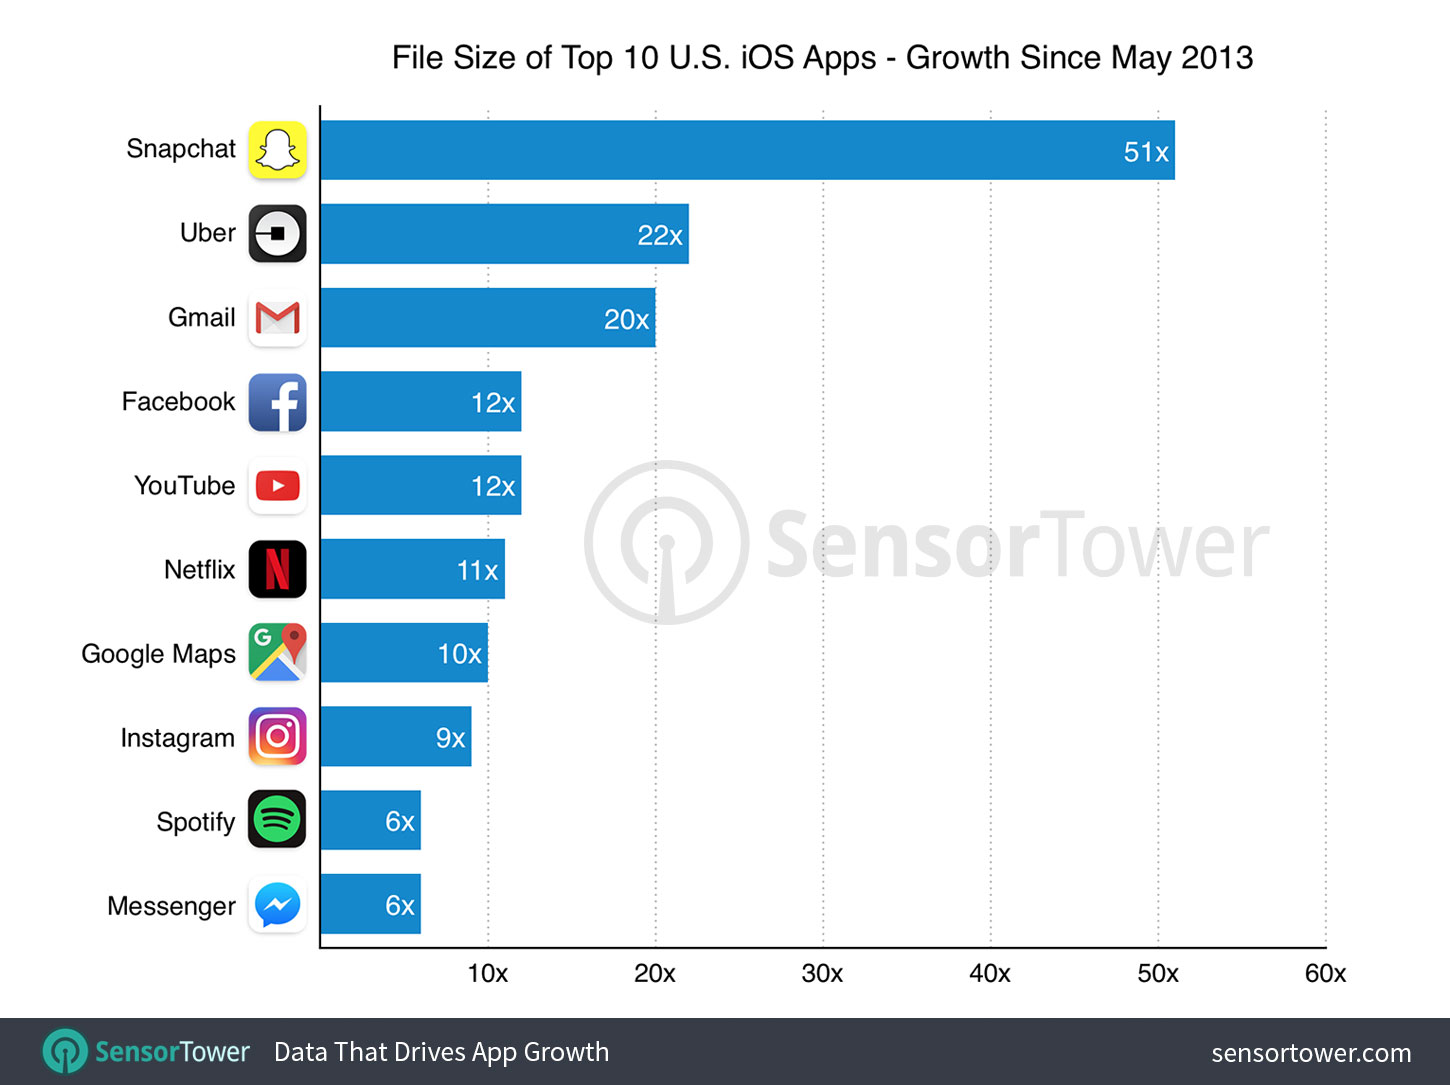 Levantamento sobre crescimento do tamanho dos principais apps da App Store, da Sensor Tower